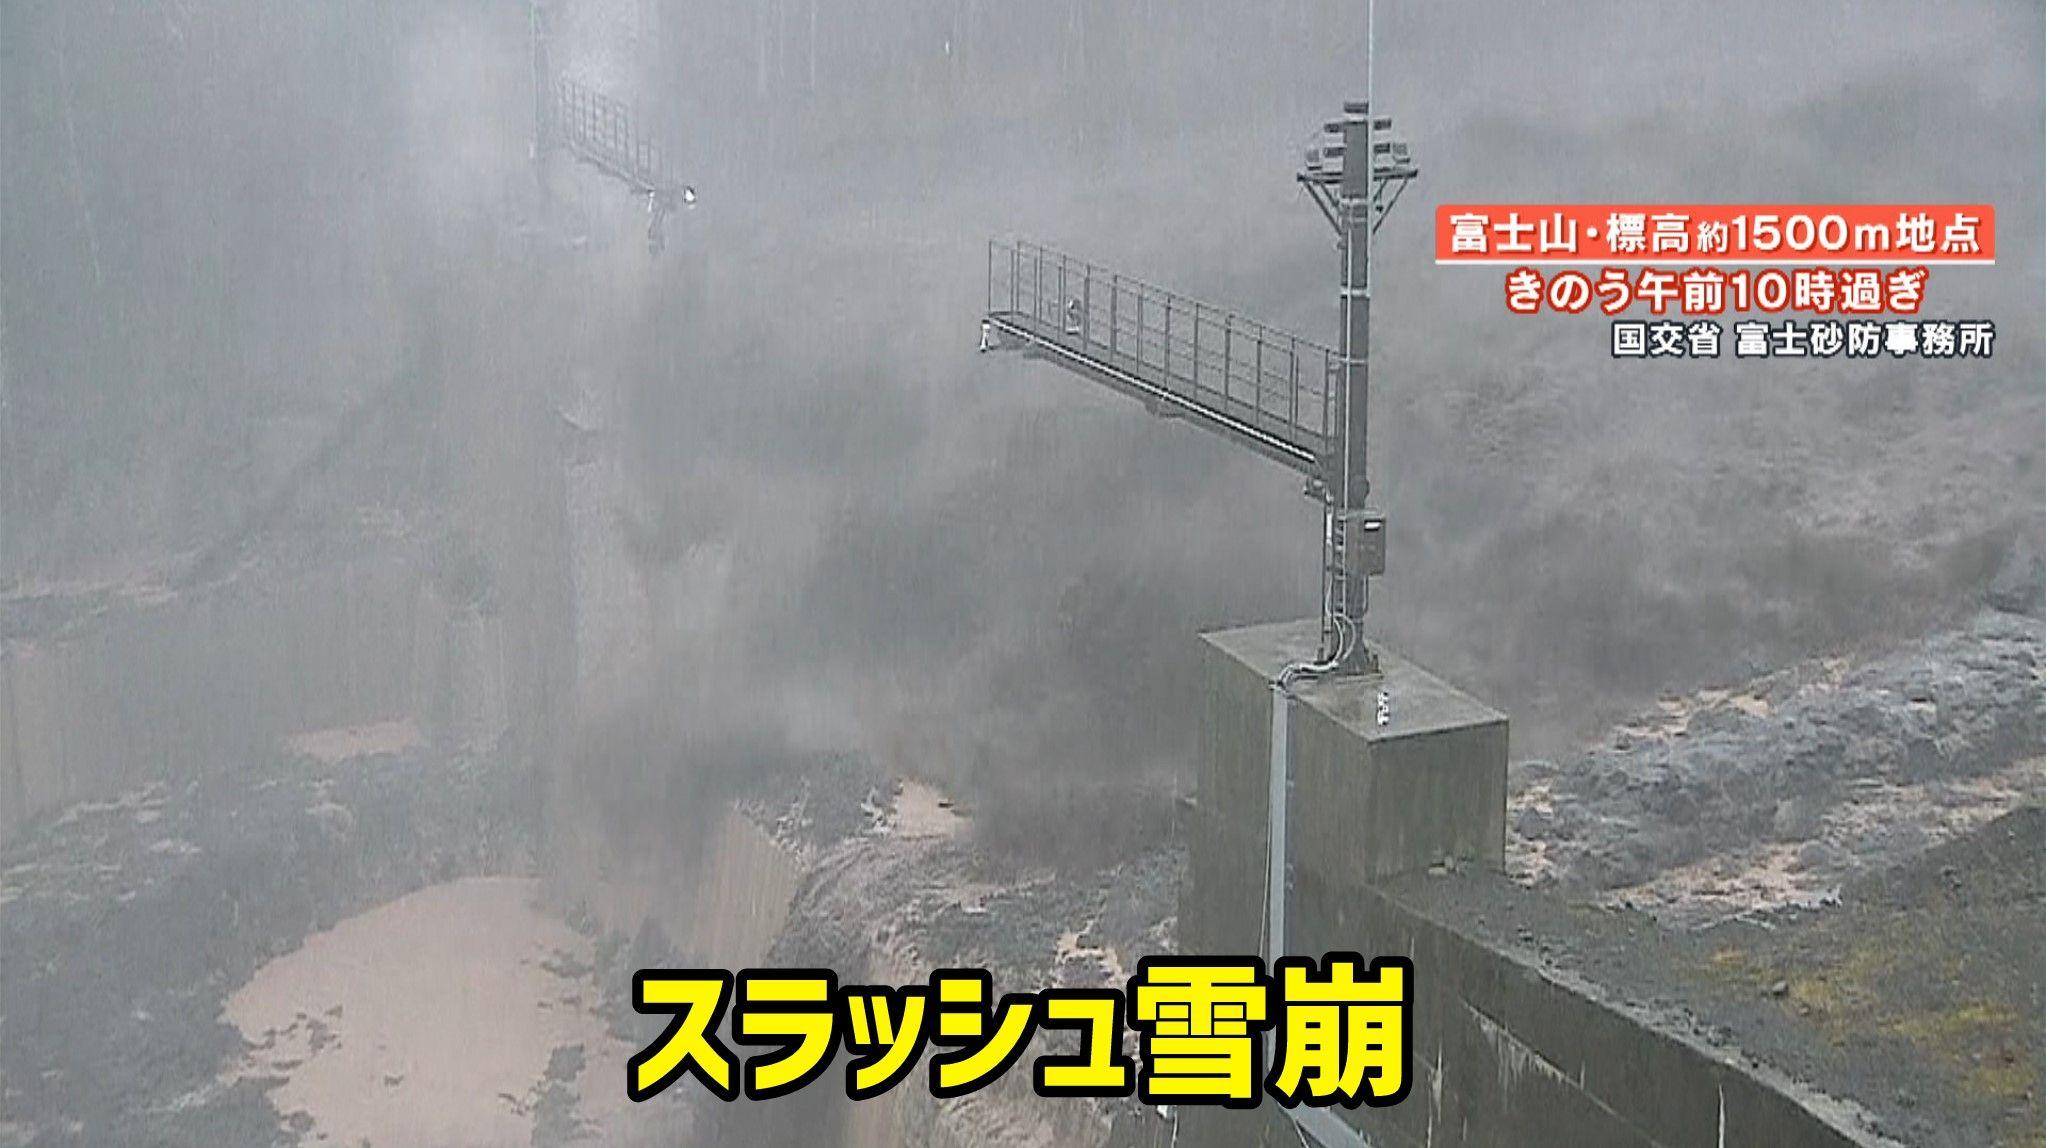 【瞬間】富士山で土石流「スラッシュ雪崩」発生 引き起こした原因は…“春の嵐”？ 天達武史気象予報士が解説